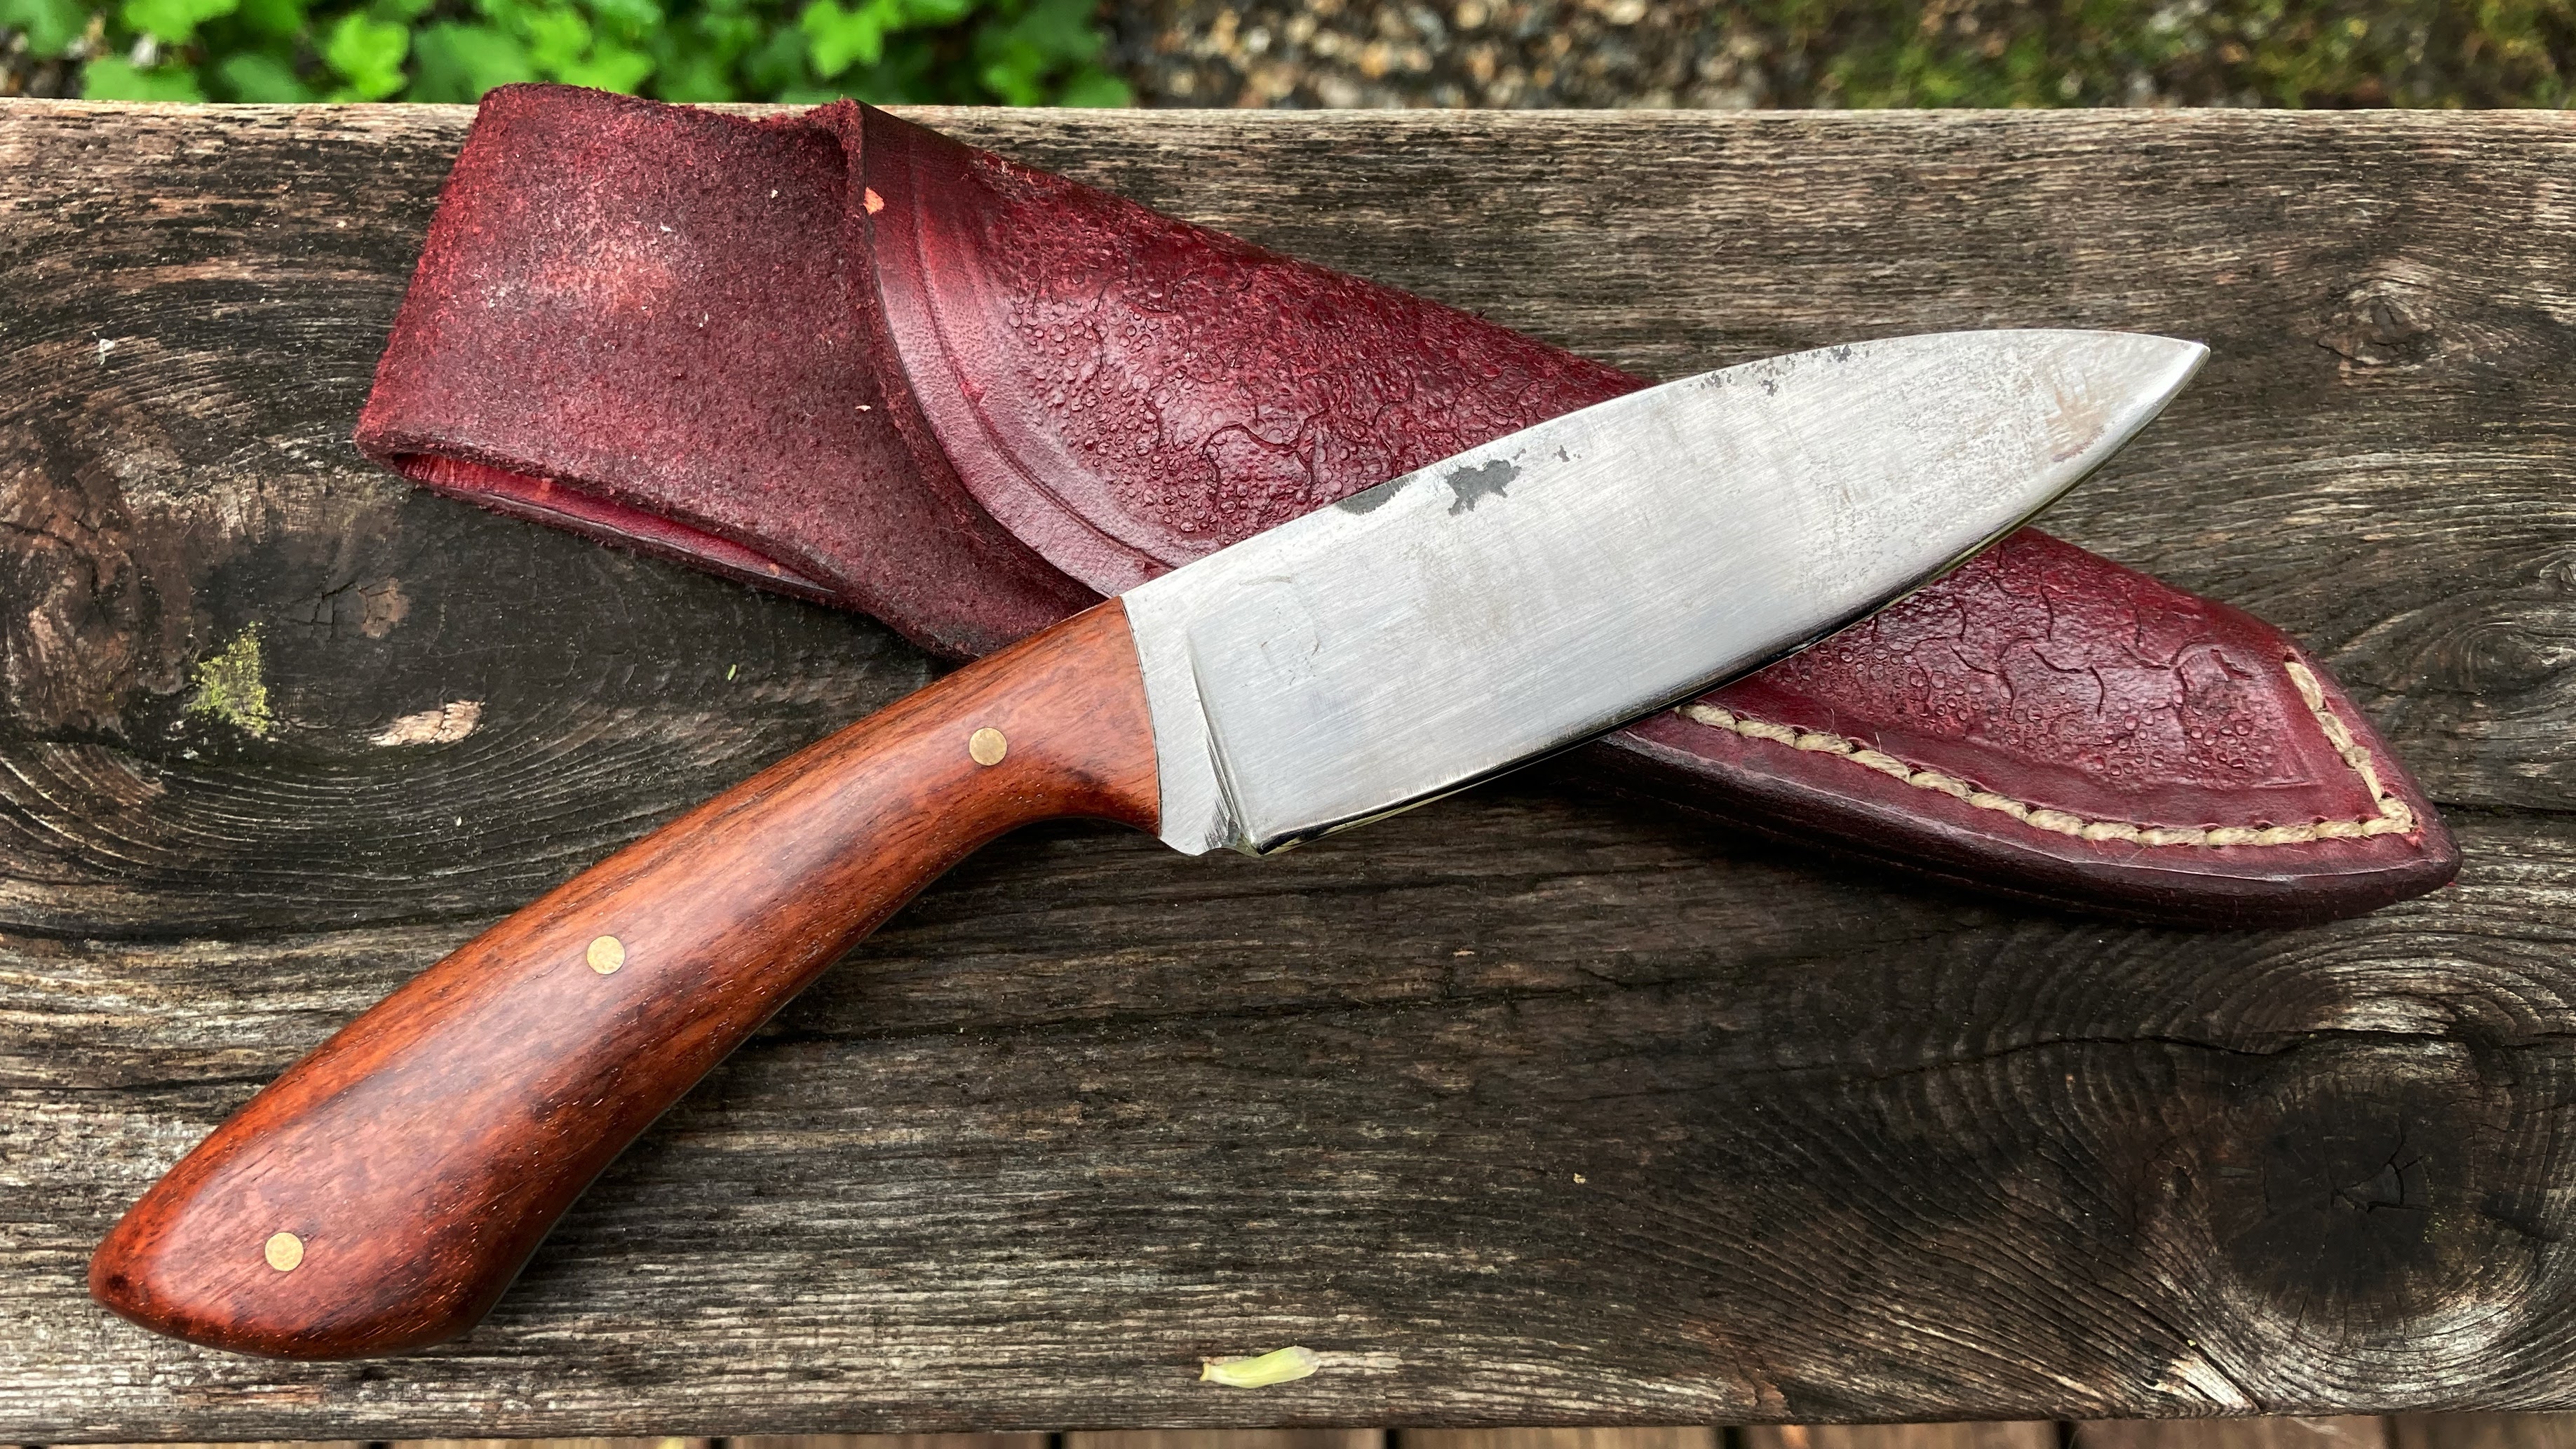 Handmade bushcraft knife by Liam Penn